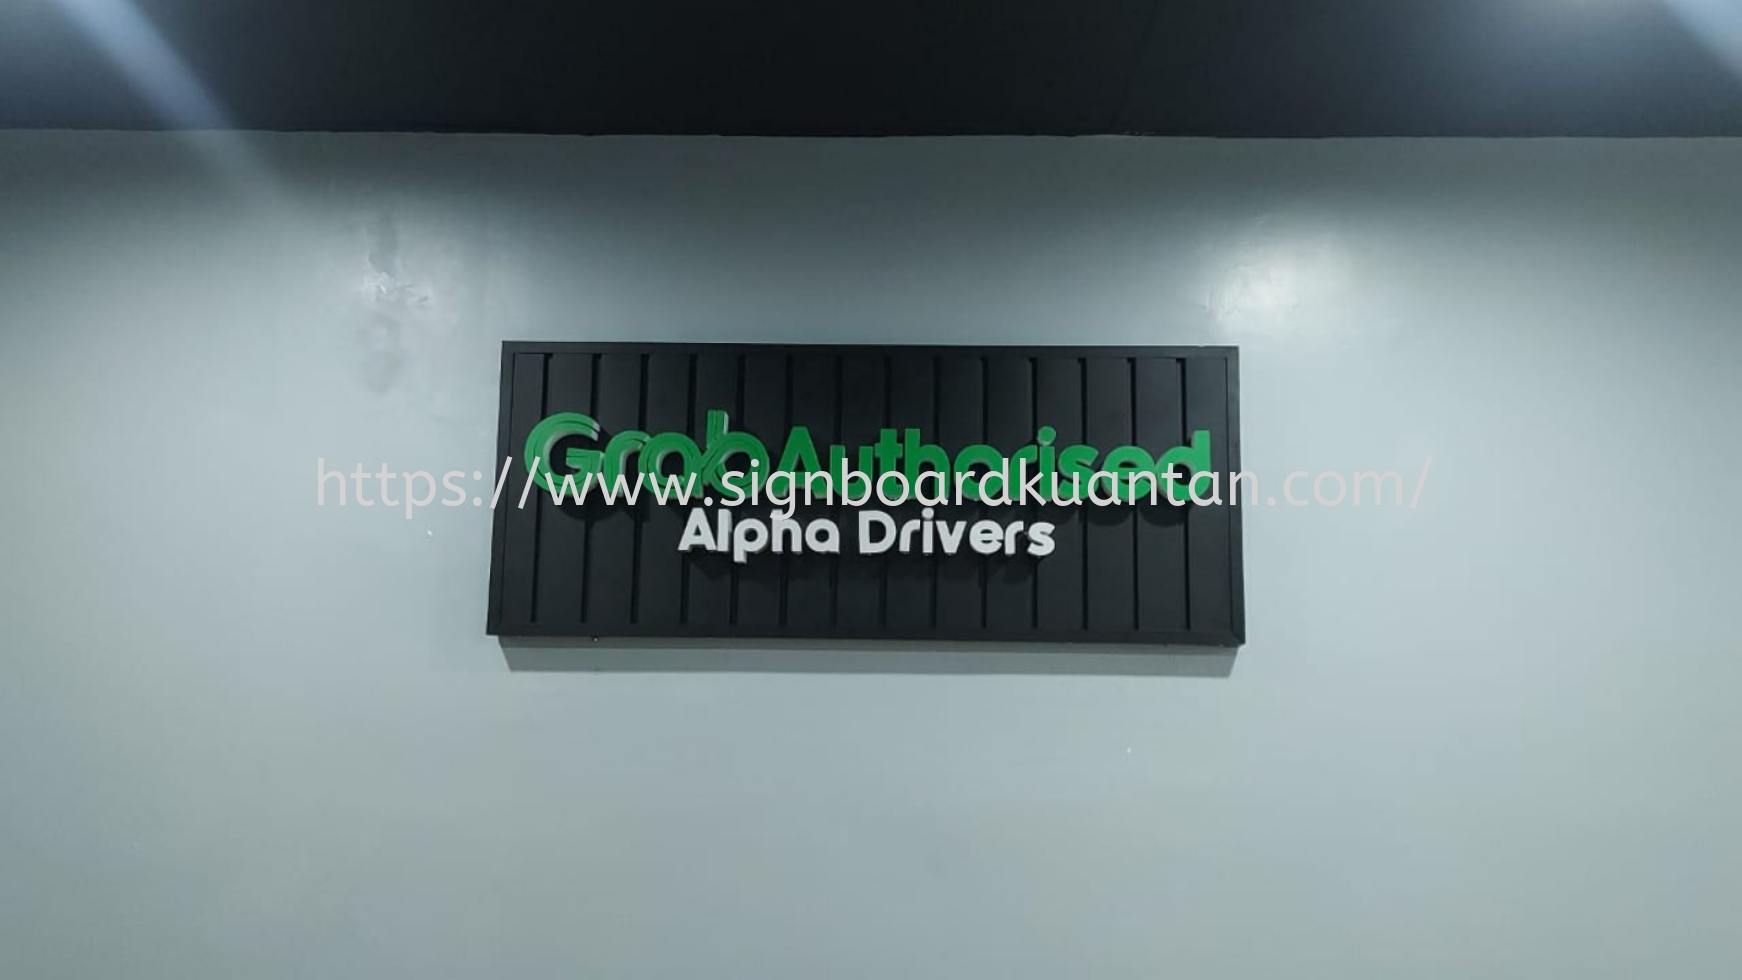 GRAB INDOOR ALUMINIUM PANEL 3D LED BOX UP SIGNAGE SIGNBOARD AT PAHANG TEMERLOH 